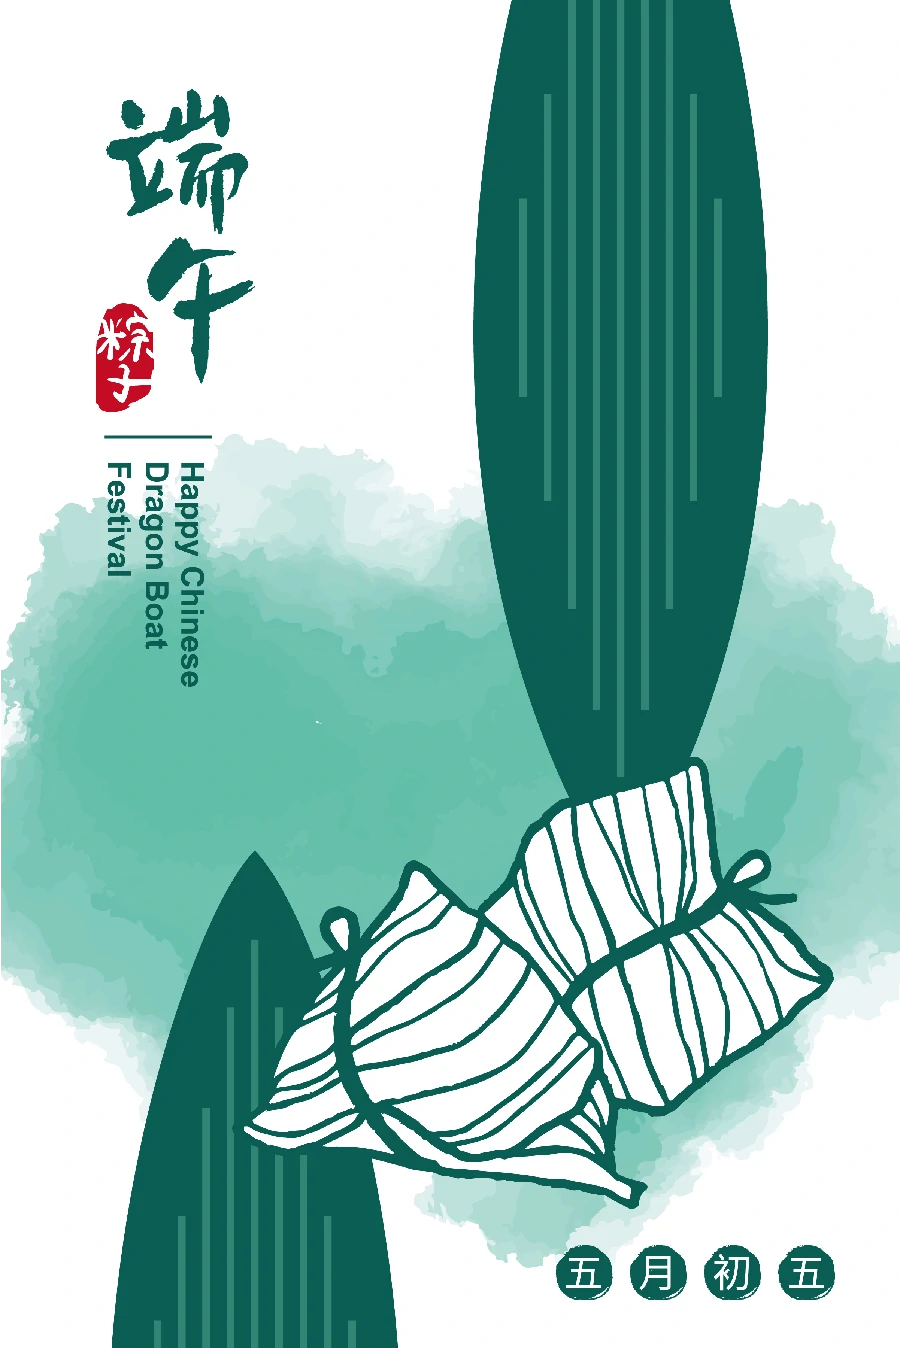 中国风传统节日端午节屈原划龙舟包粽子节日插画海报AI矢量素材【010】